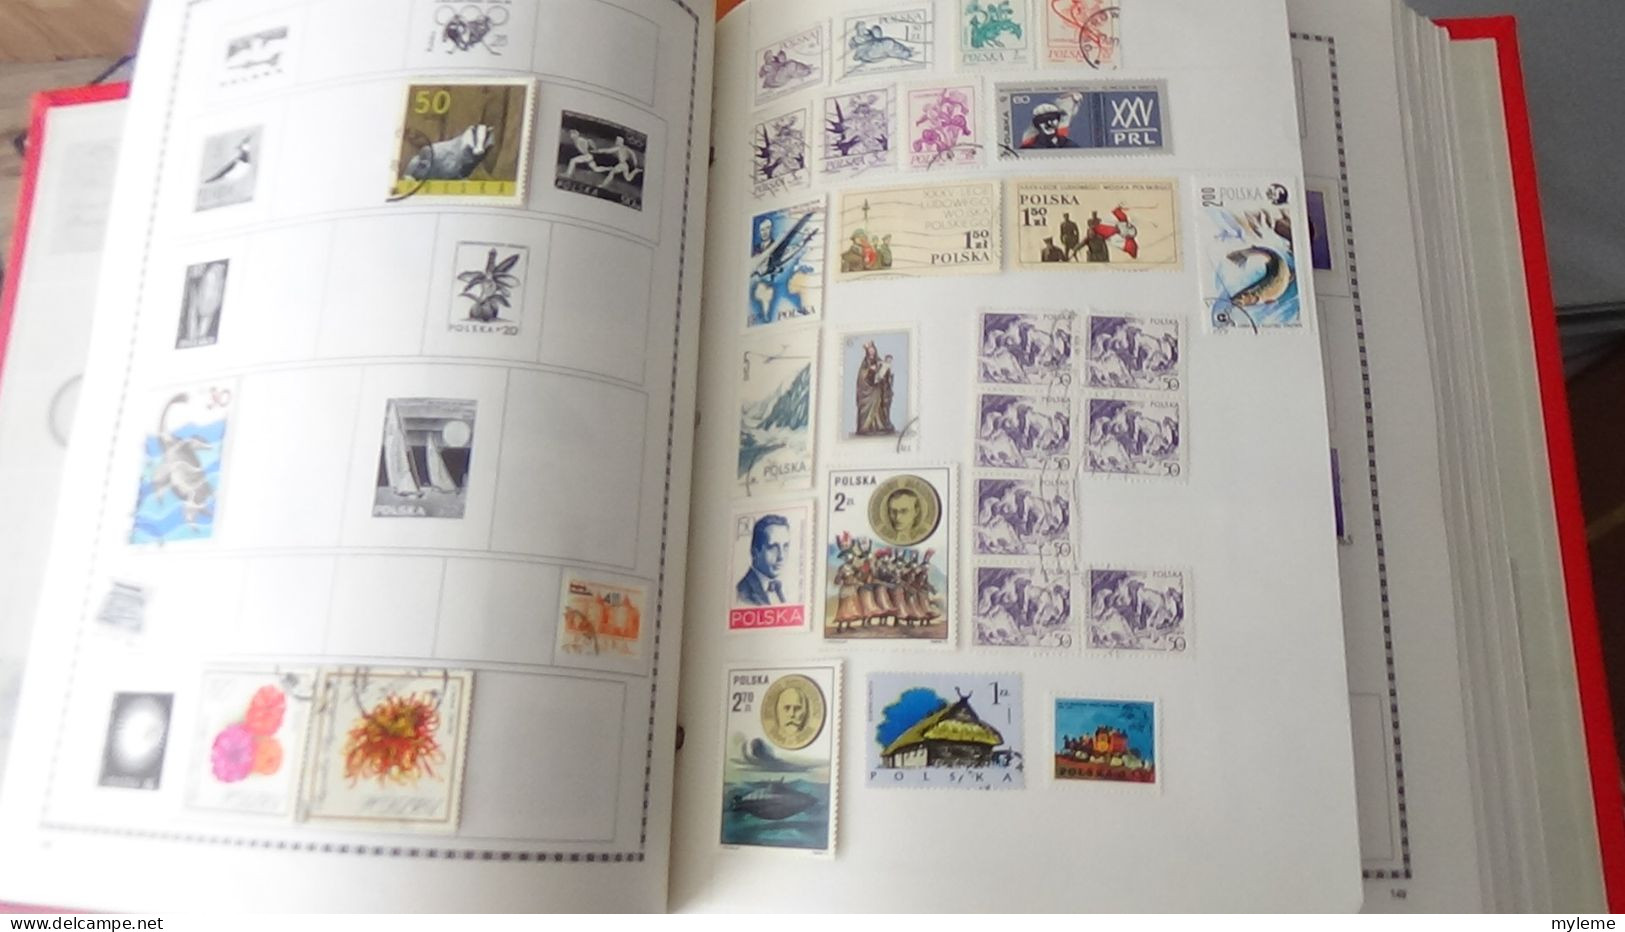 BF4 Collection de timbres oblitérés + page de timbres ** avec défauts. (toutes les photos n'ont pas été prises)